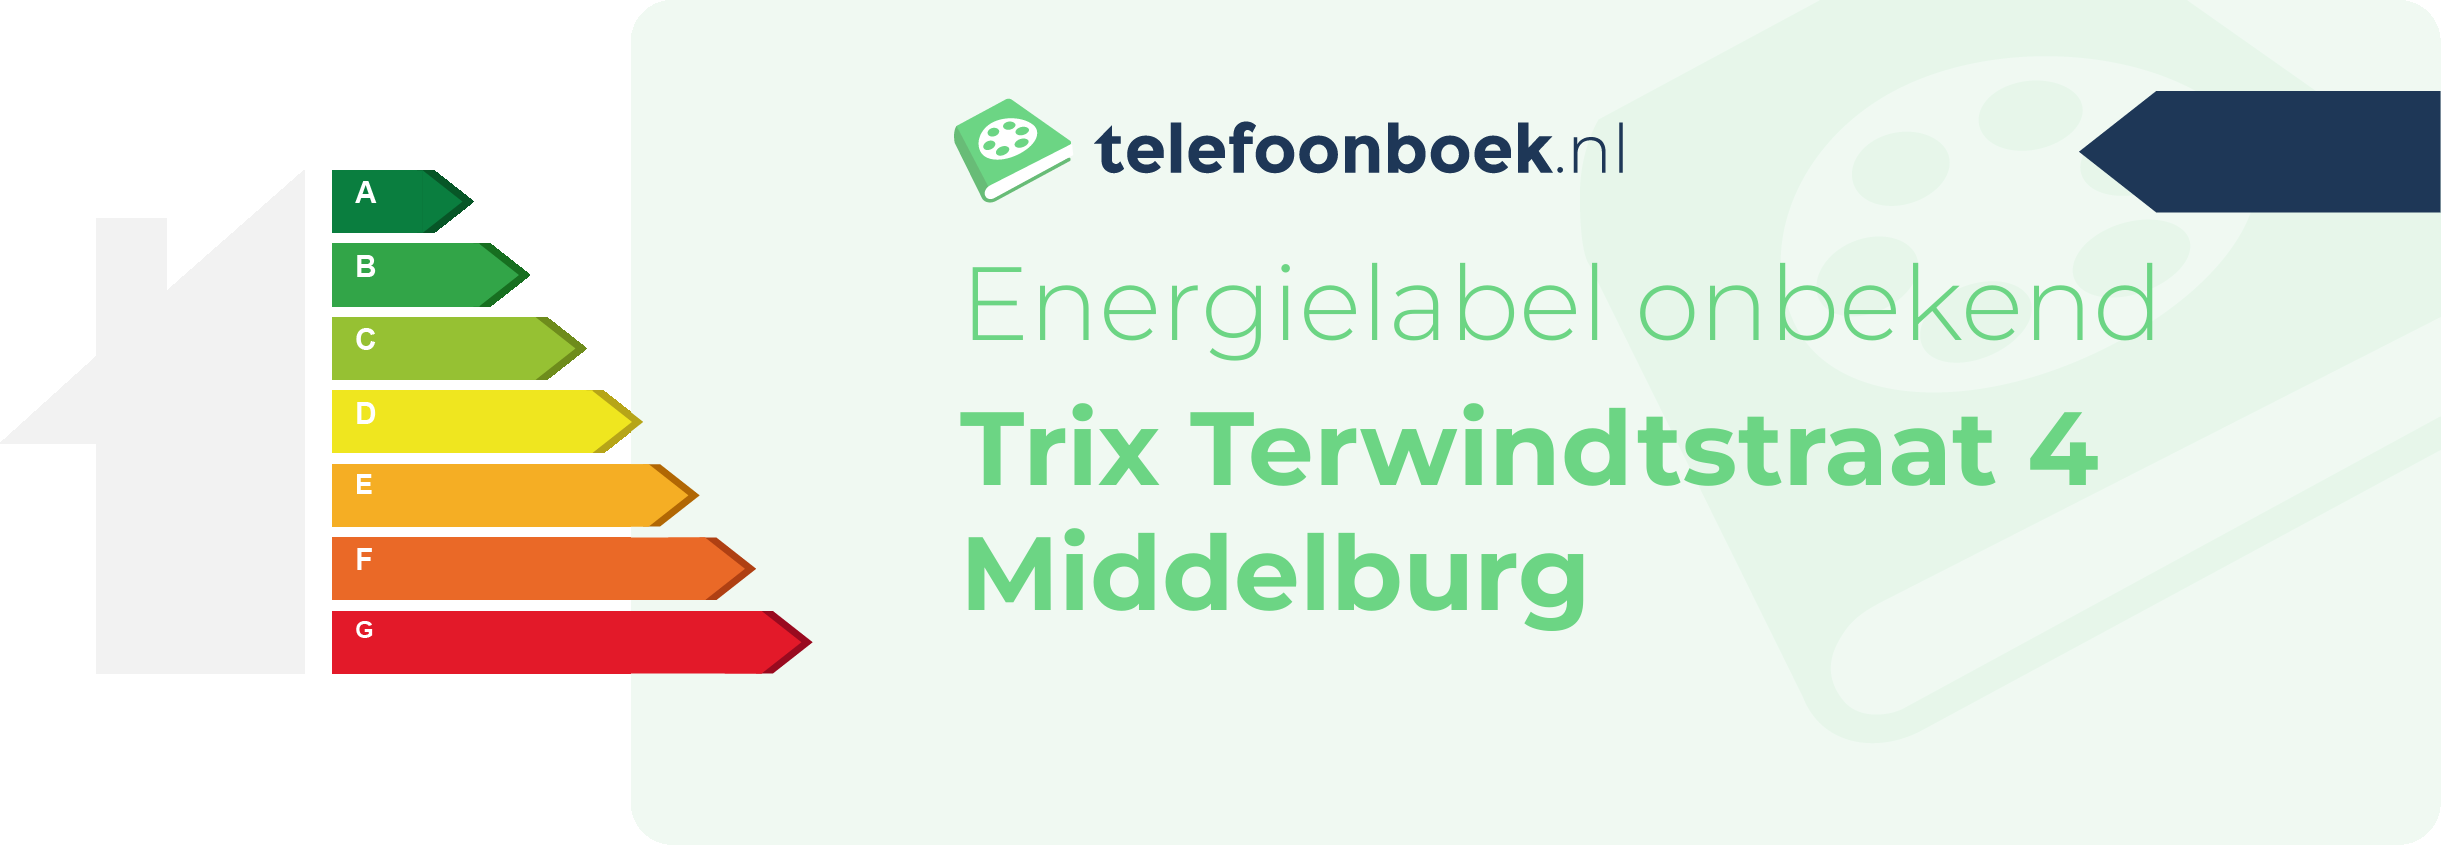 Energielabel Trix Terwindtstraat 4 Middelburg